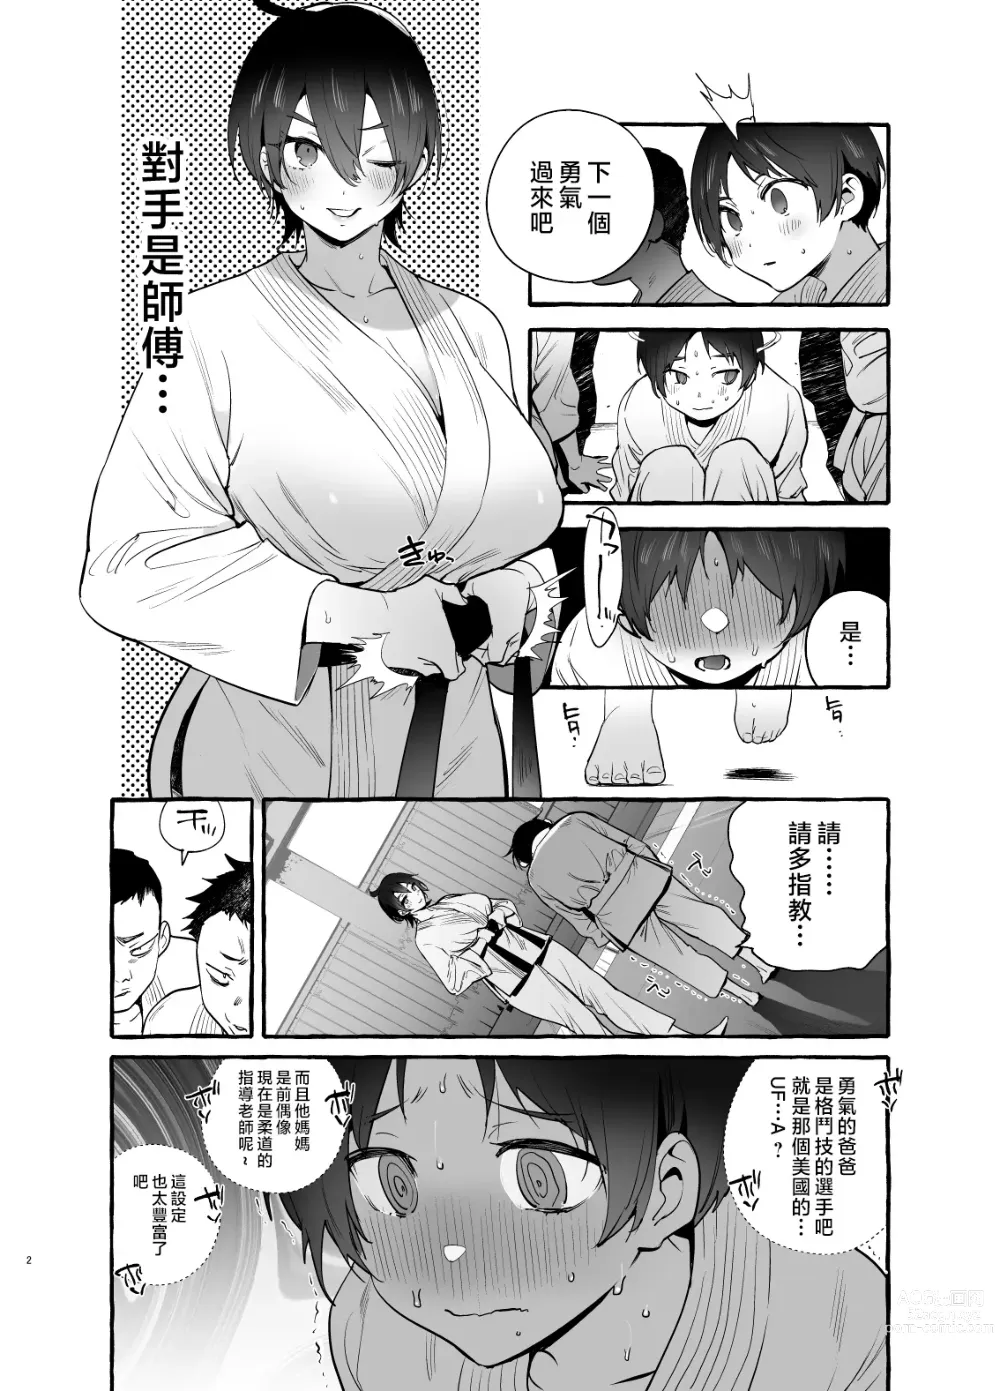 Page 3 of doujinshi Deka Tsuyo Mama wa Boku ni Amai.